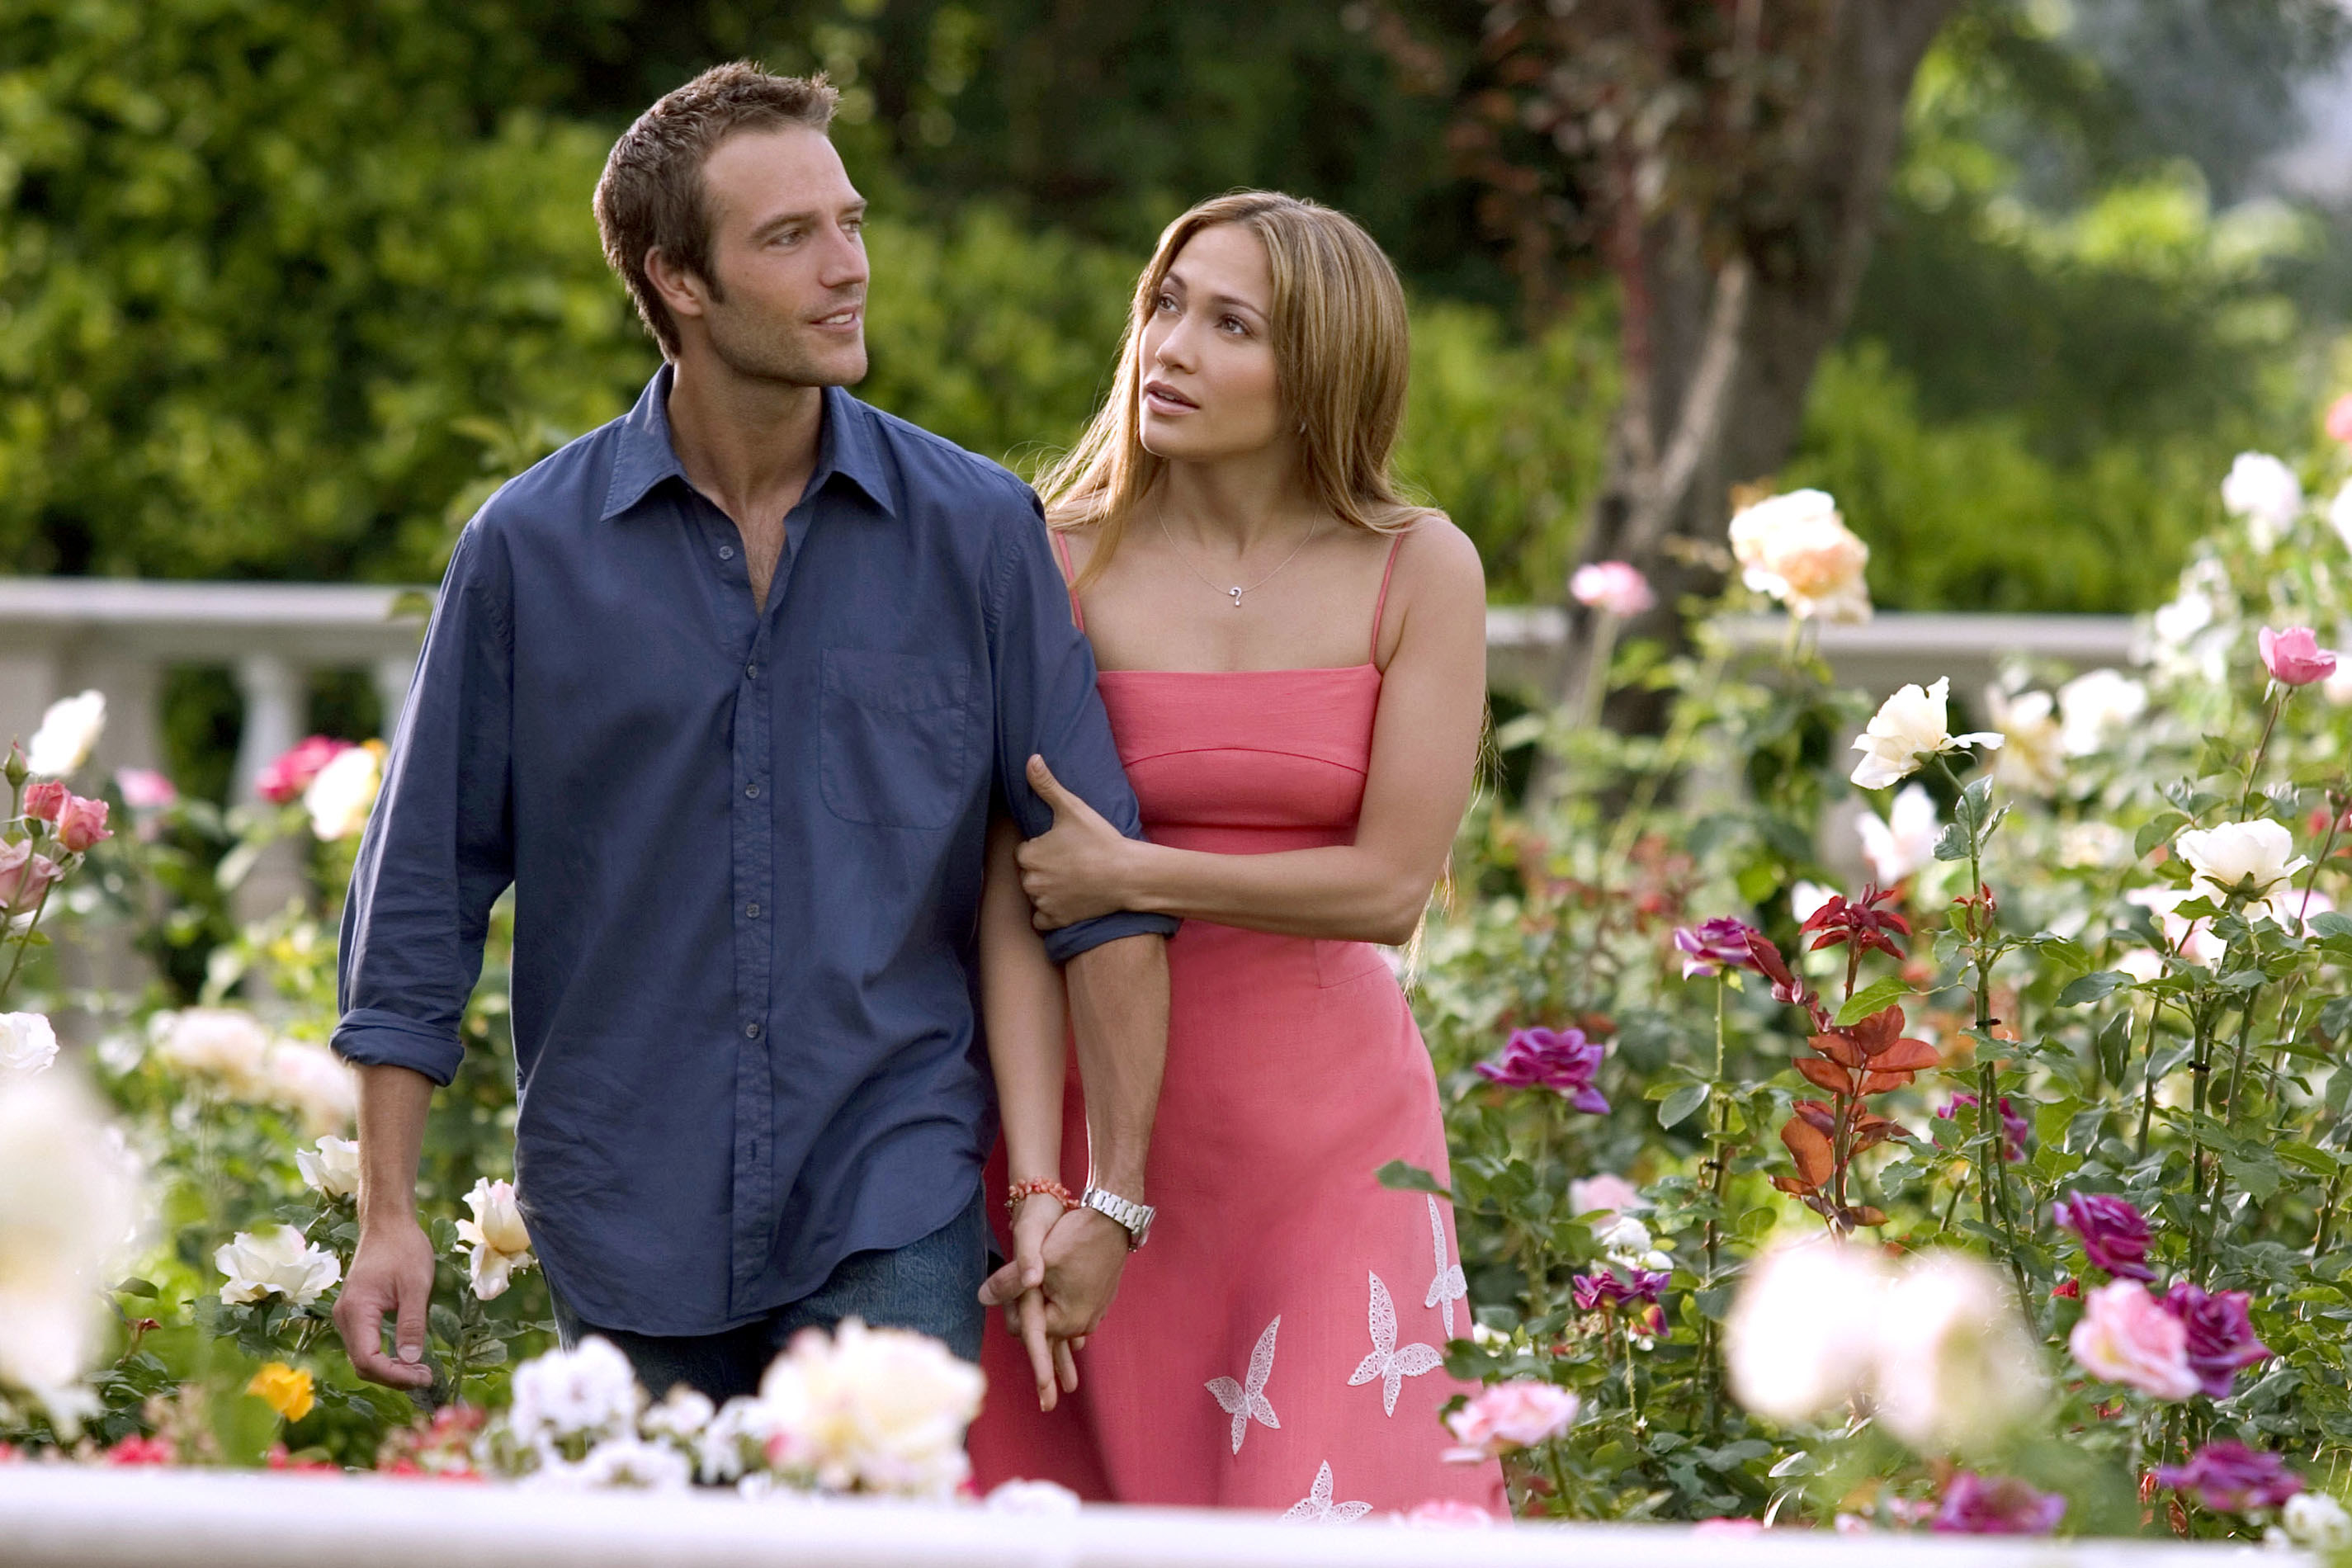 Michael Vartan and Jennifer Lopez walk through a garden